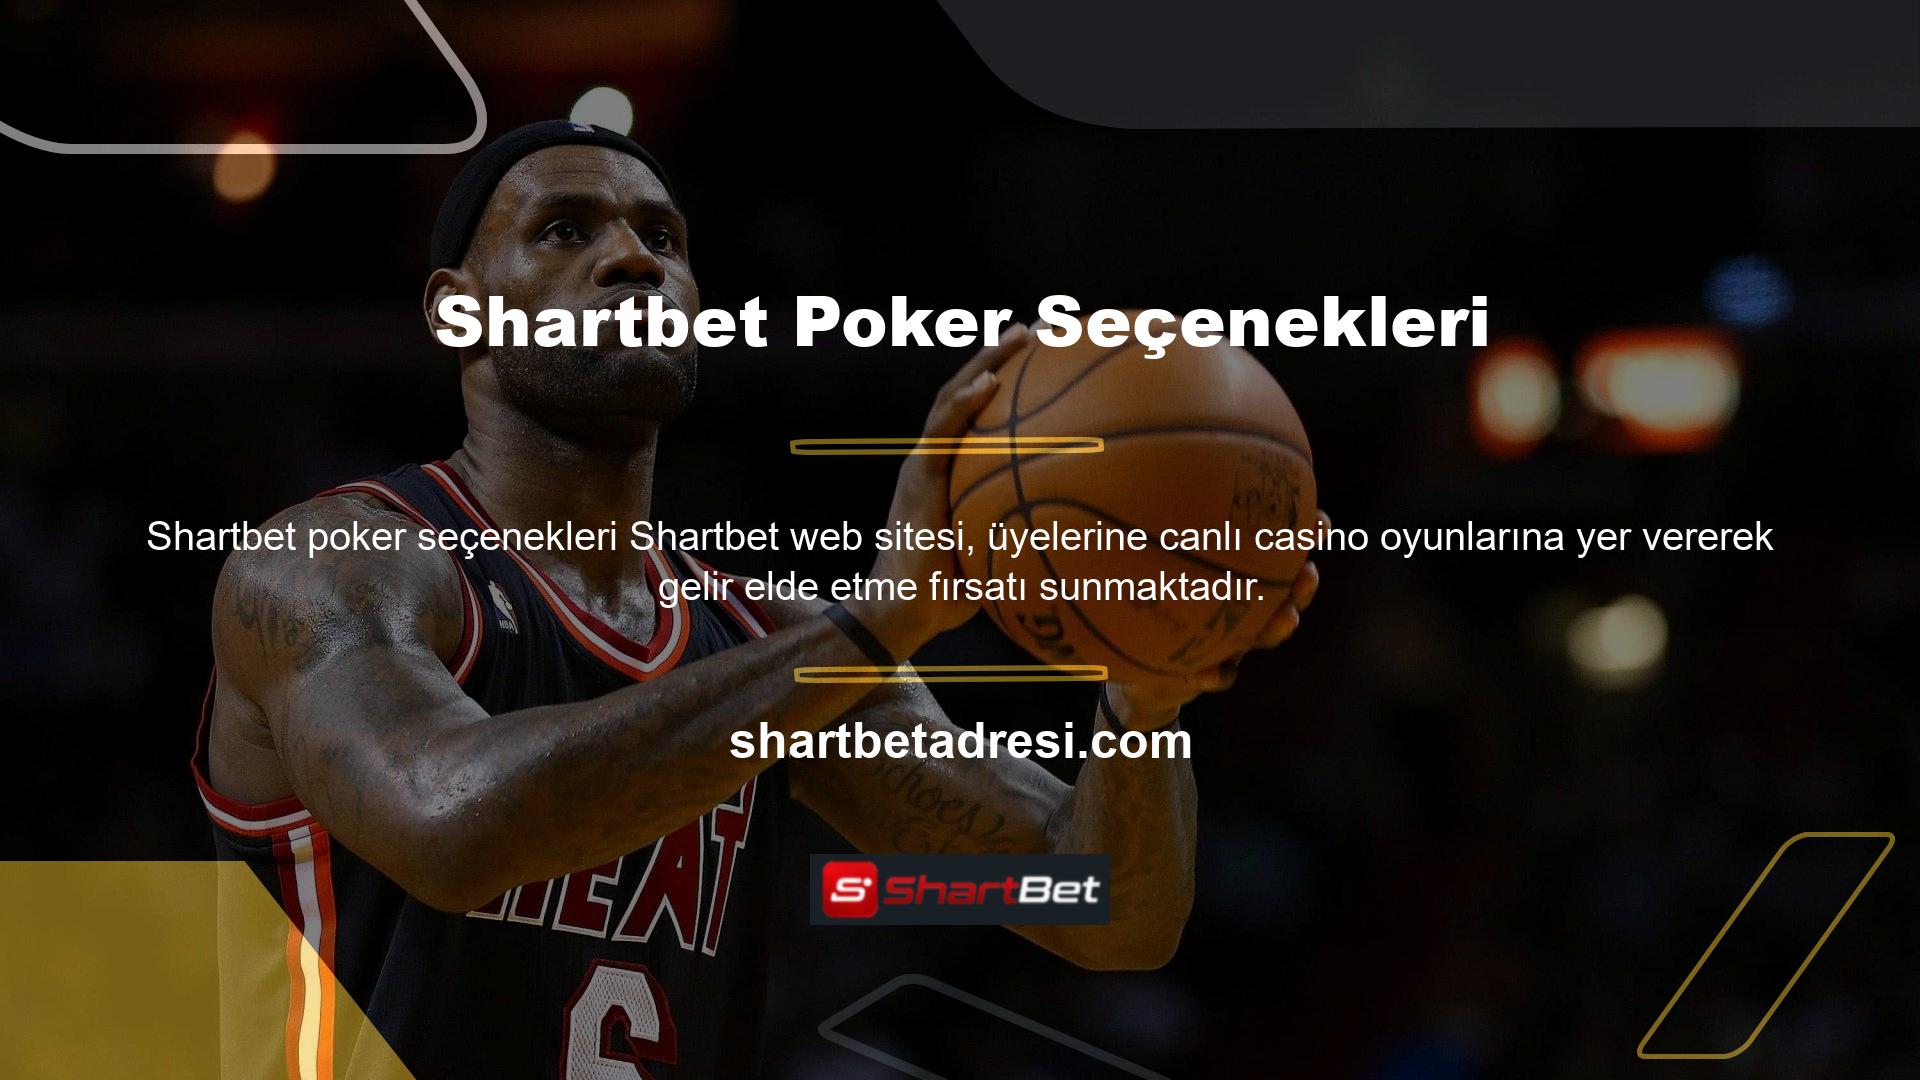 Shartbet canlı casinosu önemli miktarda gelir sağlıyor